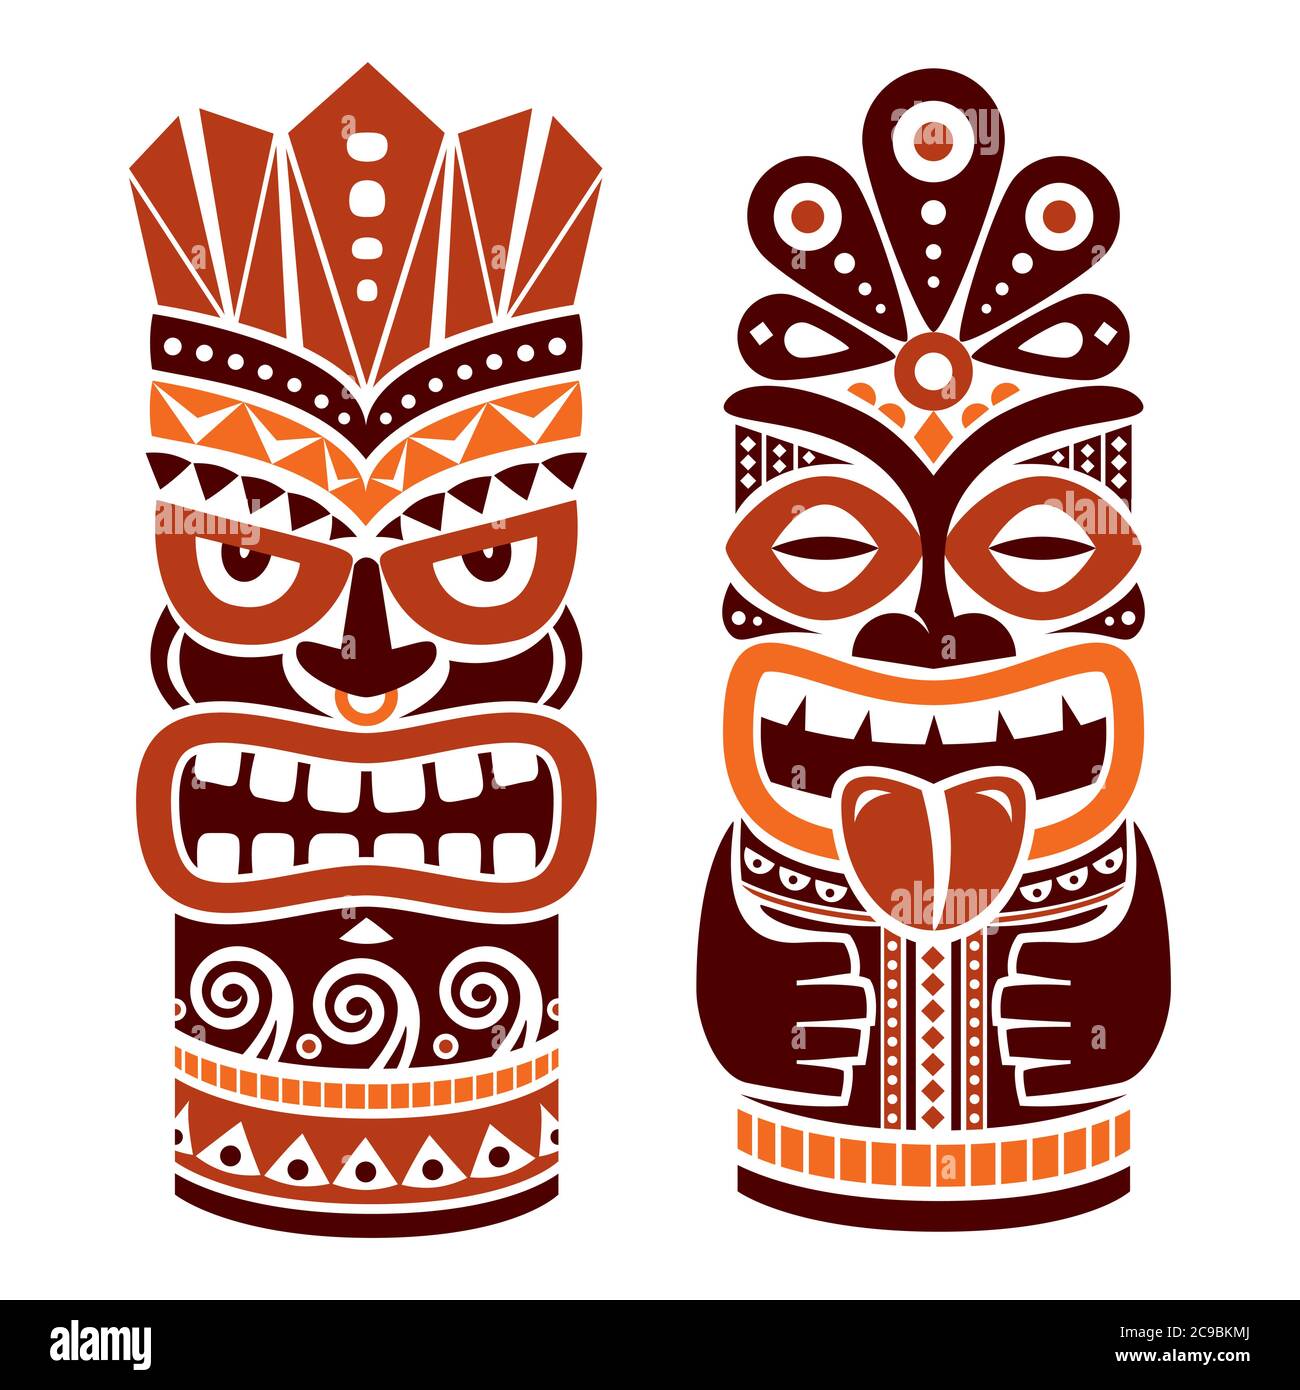 Tiki Pol Totem Vektor-Design in braun - traditionelle Statue Dekor aus Polynesien und Hawaii, Stammes Volkskunst Hintergrund gesetzt Stock Vektor